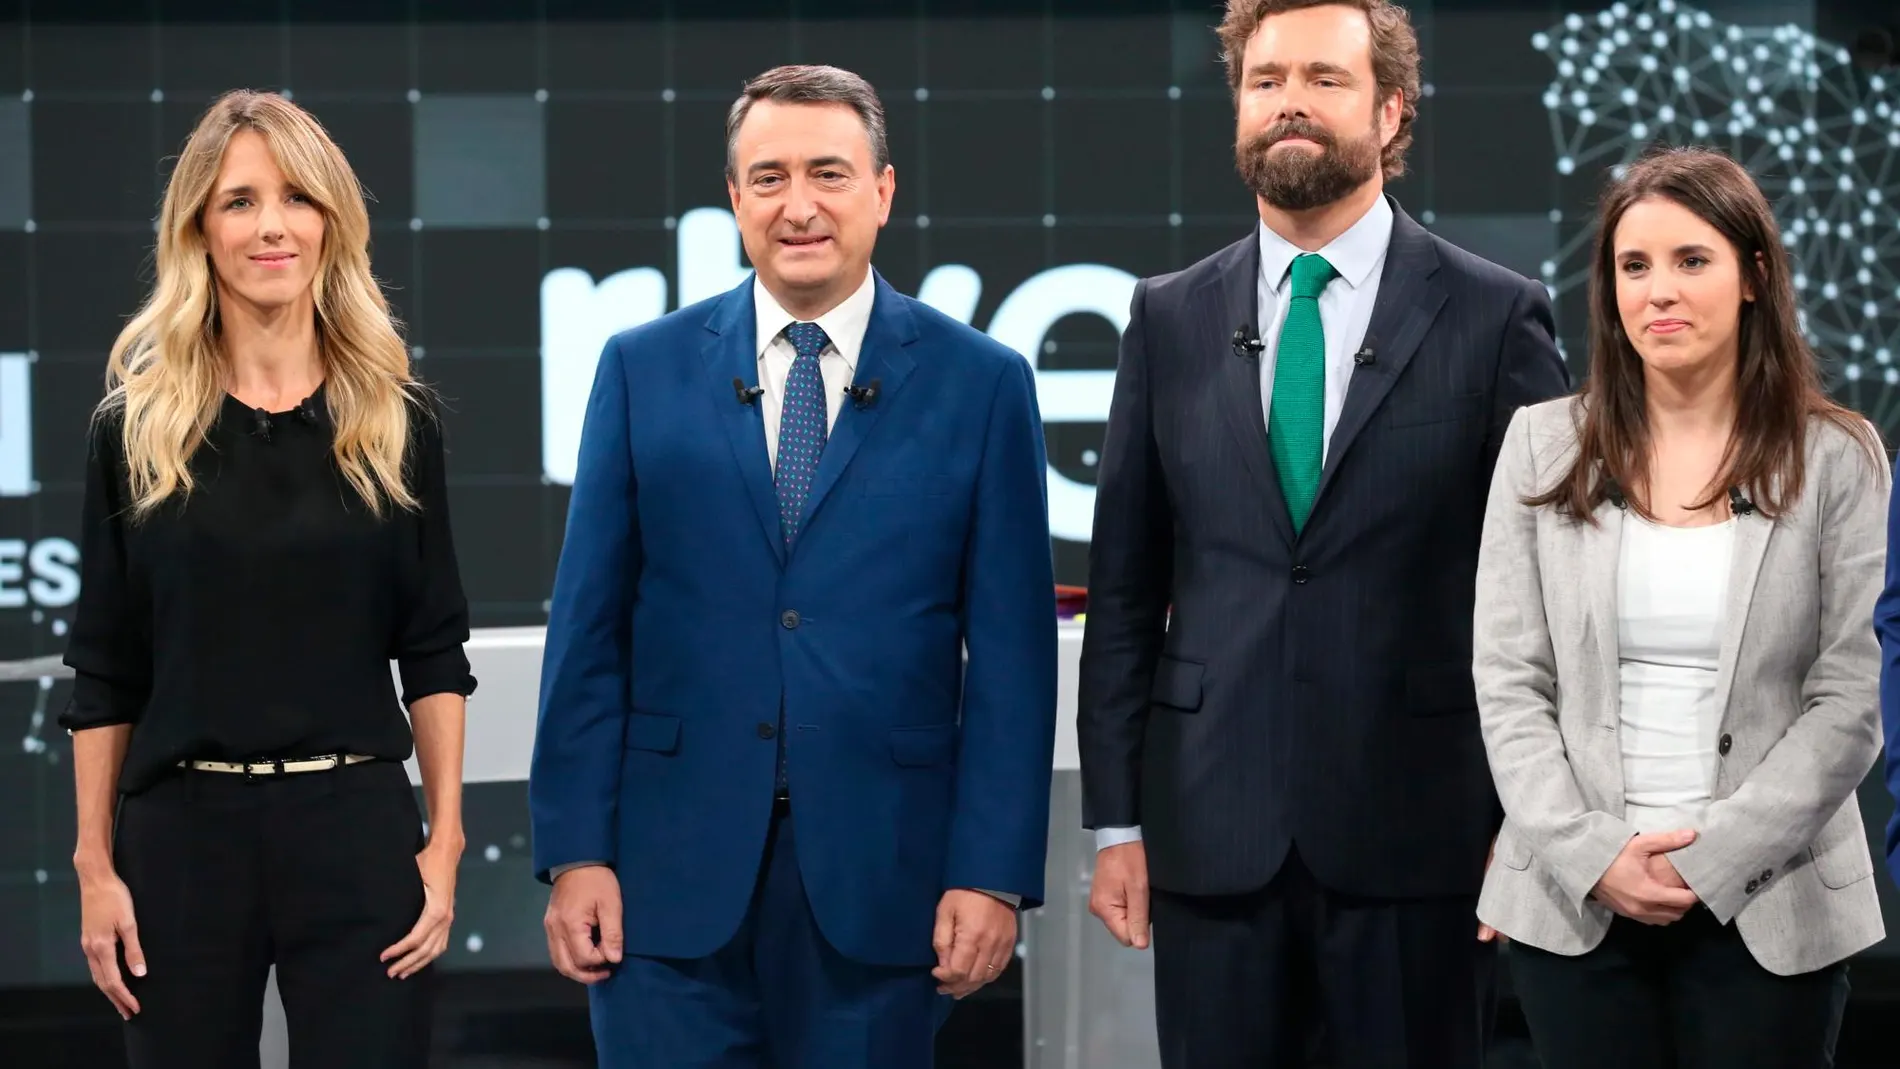 La solución para Cataluña divide a los partidos en el primer debate electoral